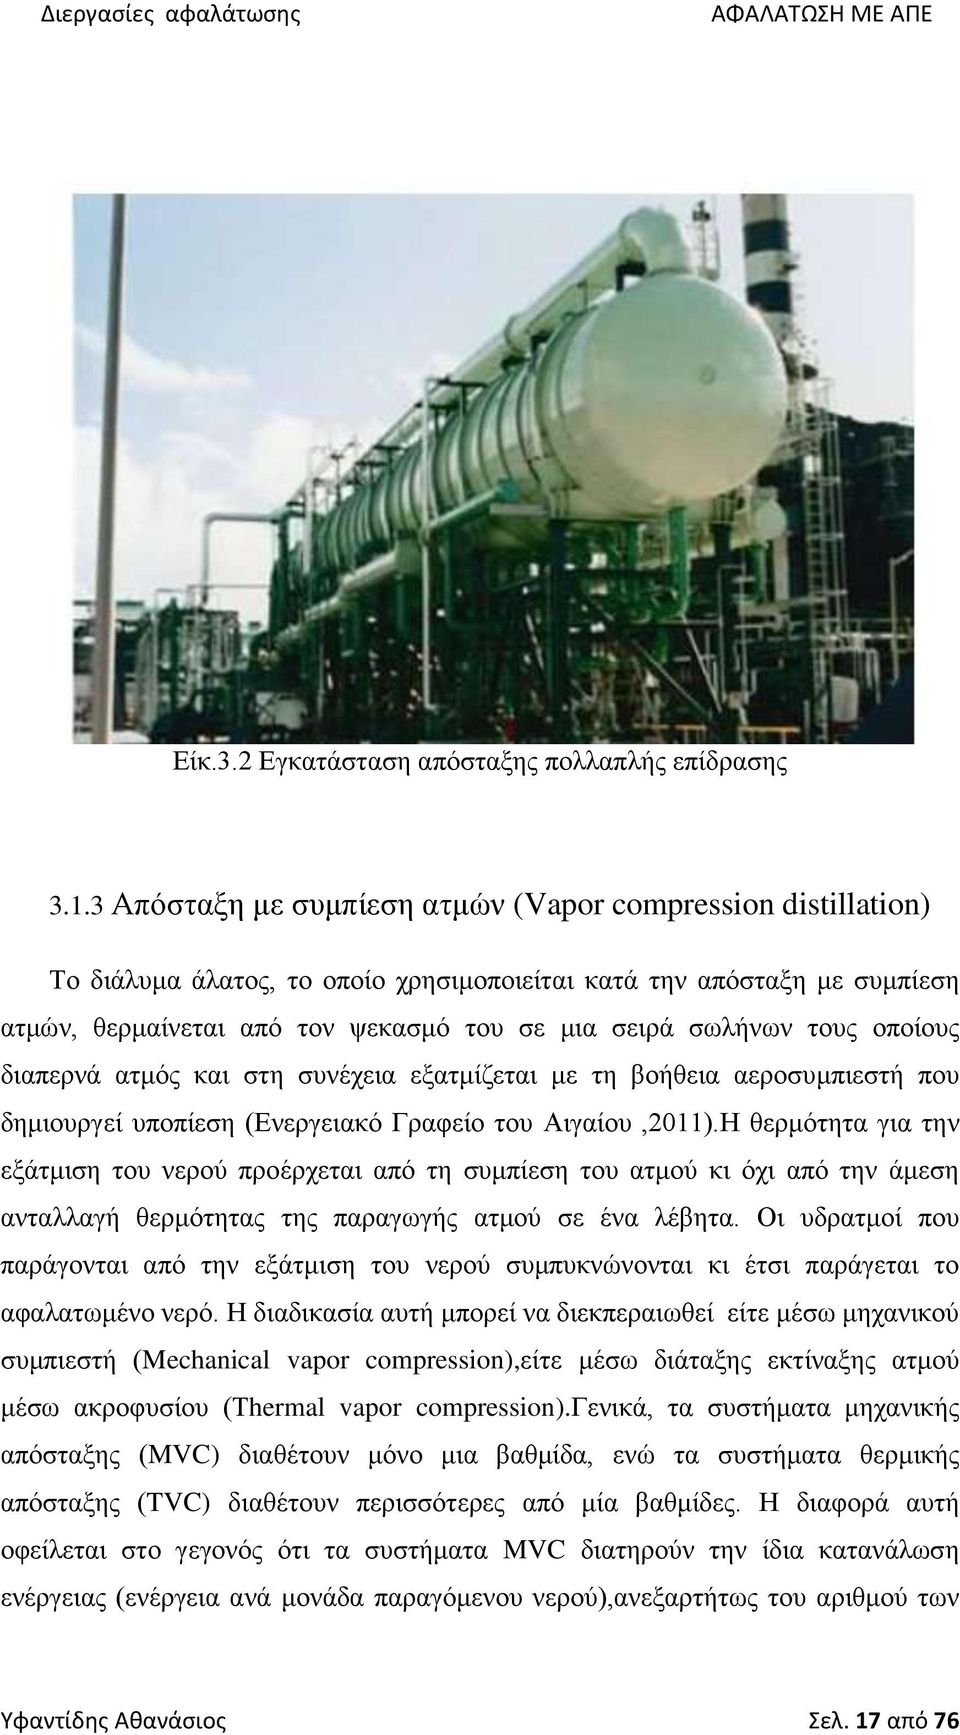 τους οποίους διαπερνά ατμός και στη συνέχεια εξατμίζεται με τη βοήθεια αεροσυμπιεστή που δημιουργεί υποπίεση (Ενεργειακό Γραφείο του Αιγαίου,2011).